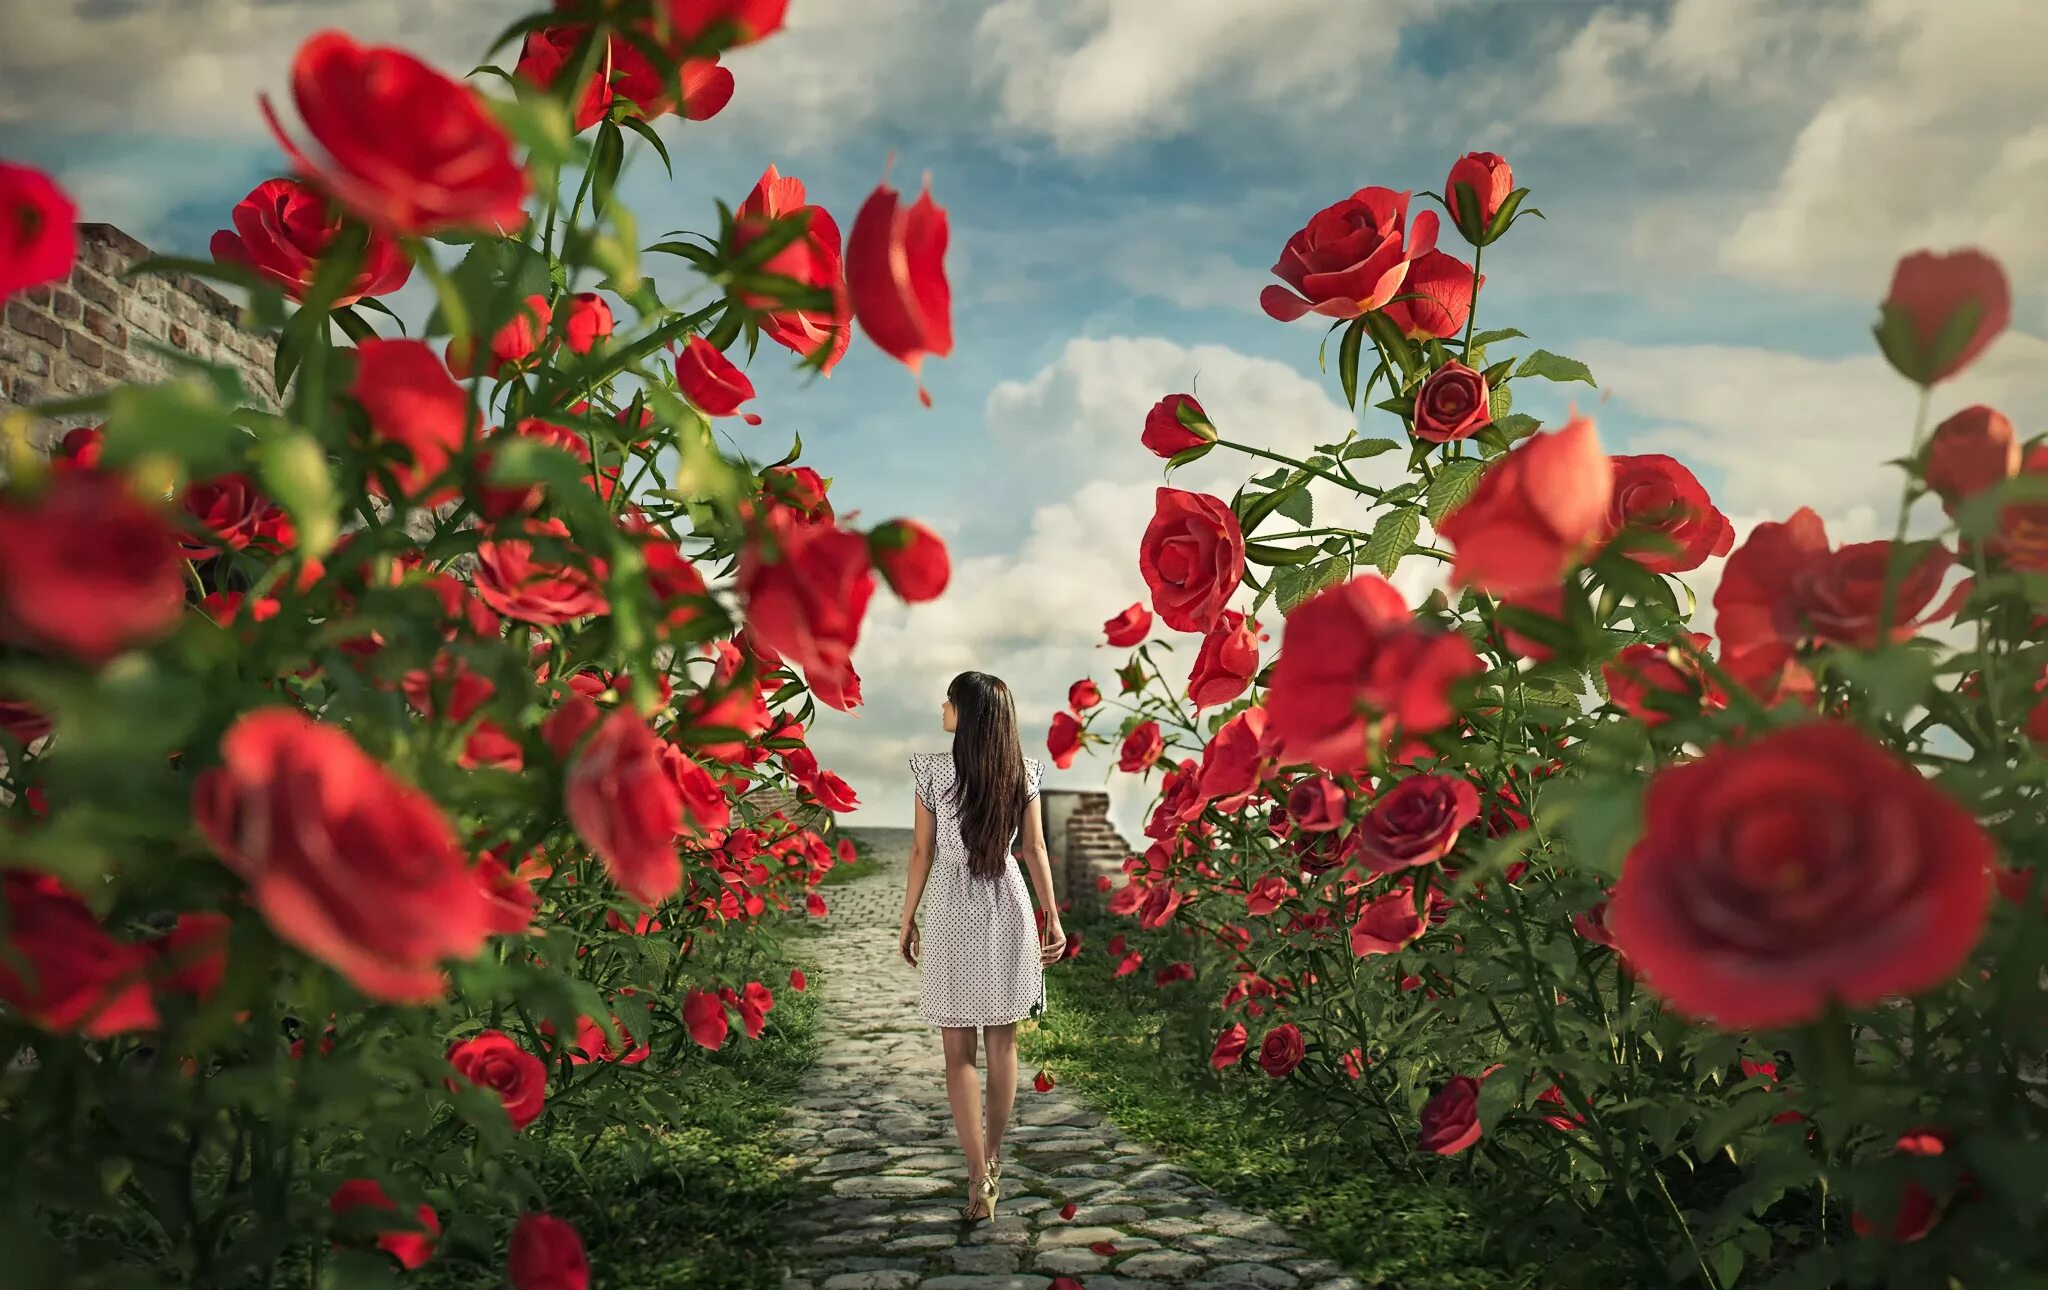 Розы были красивы и пышны пробежав. Красивые пейзажи с розами. Красные розы в саду. Девушка среди цветов. Сказочные розы.